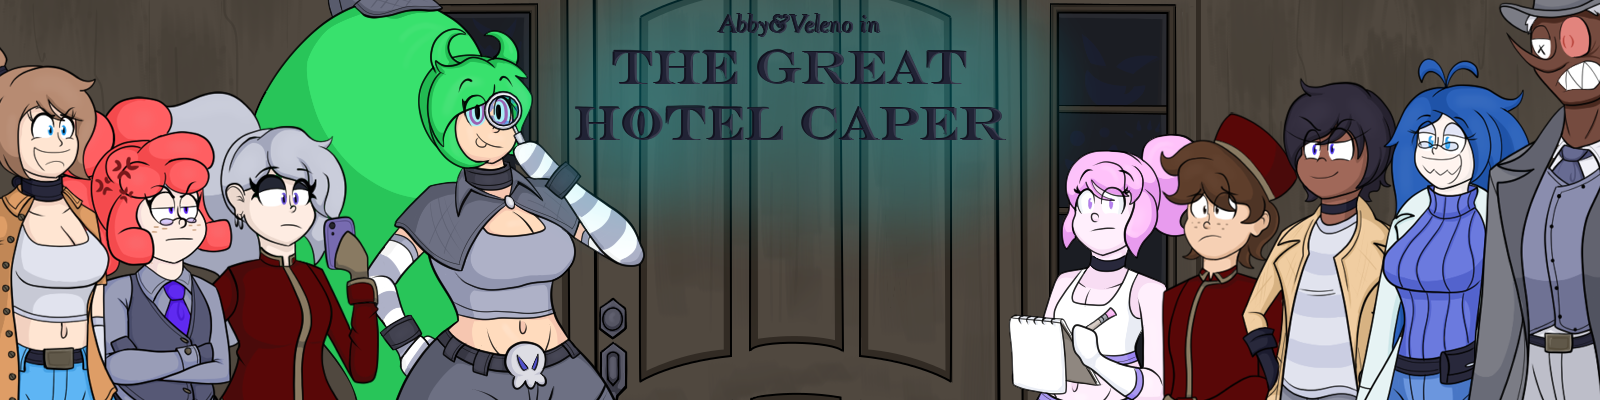 Abby & Veleno in The Great Hotel Caper (Demo)